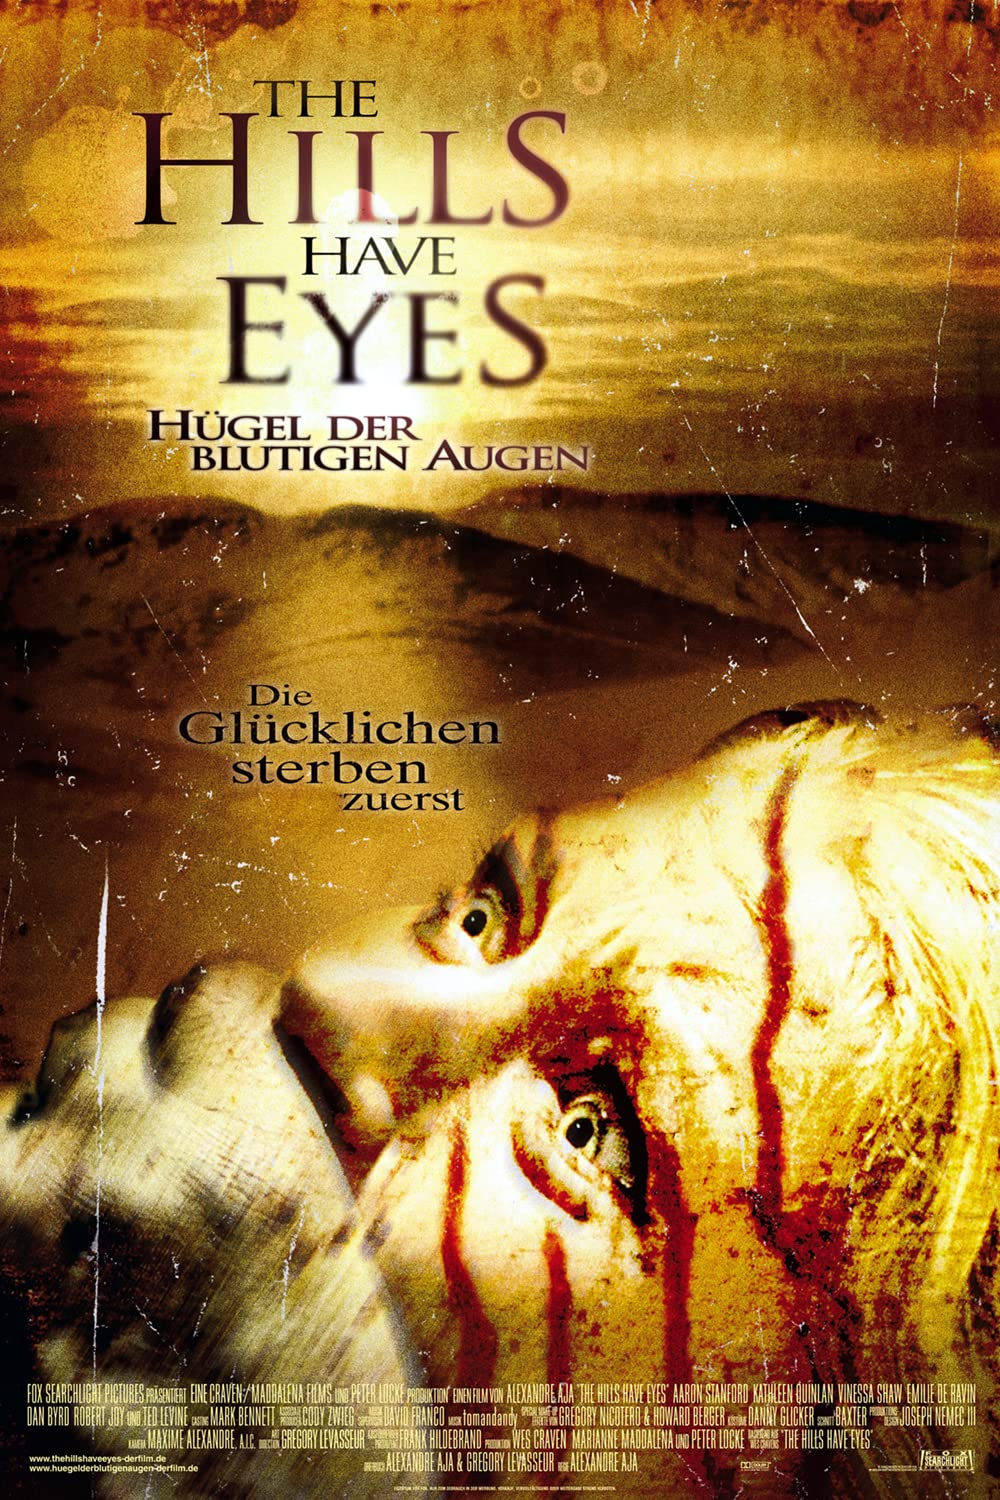 Filmbeschreibung zu The Hills Have Eyes - Hügel der blutigen Augen